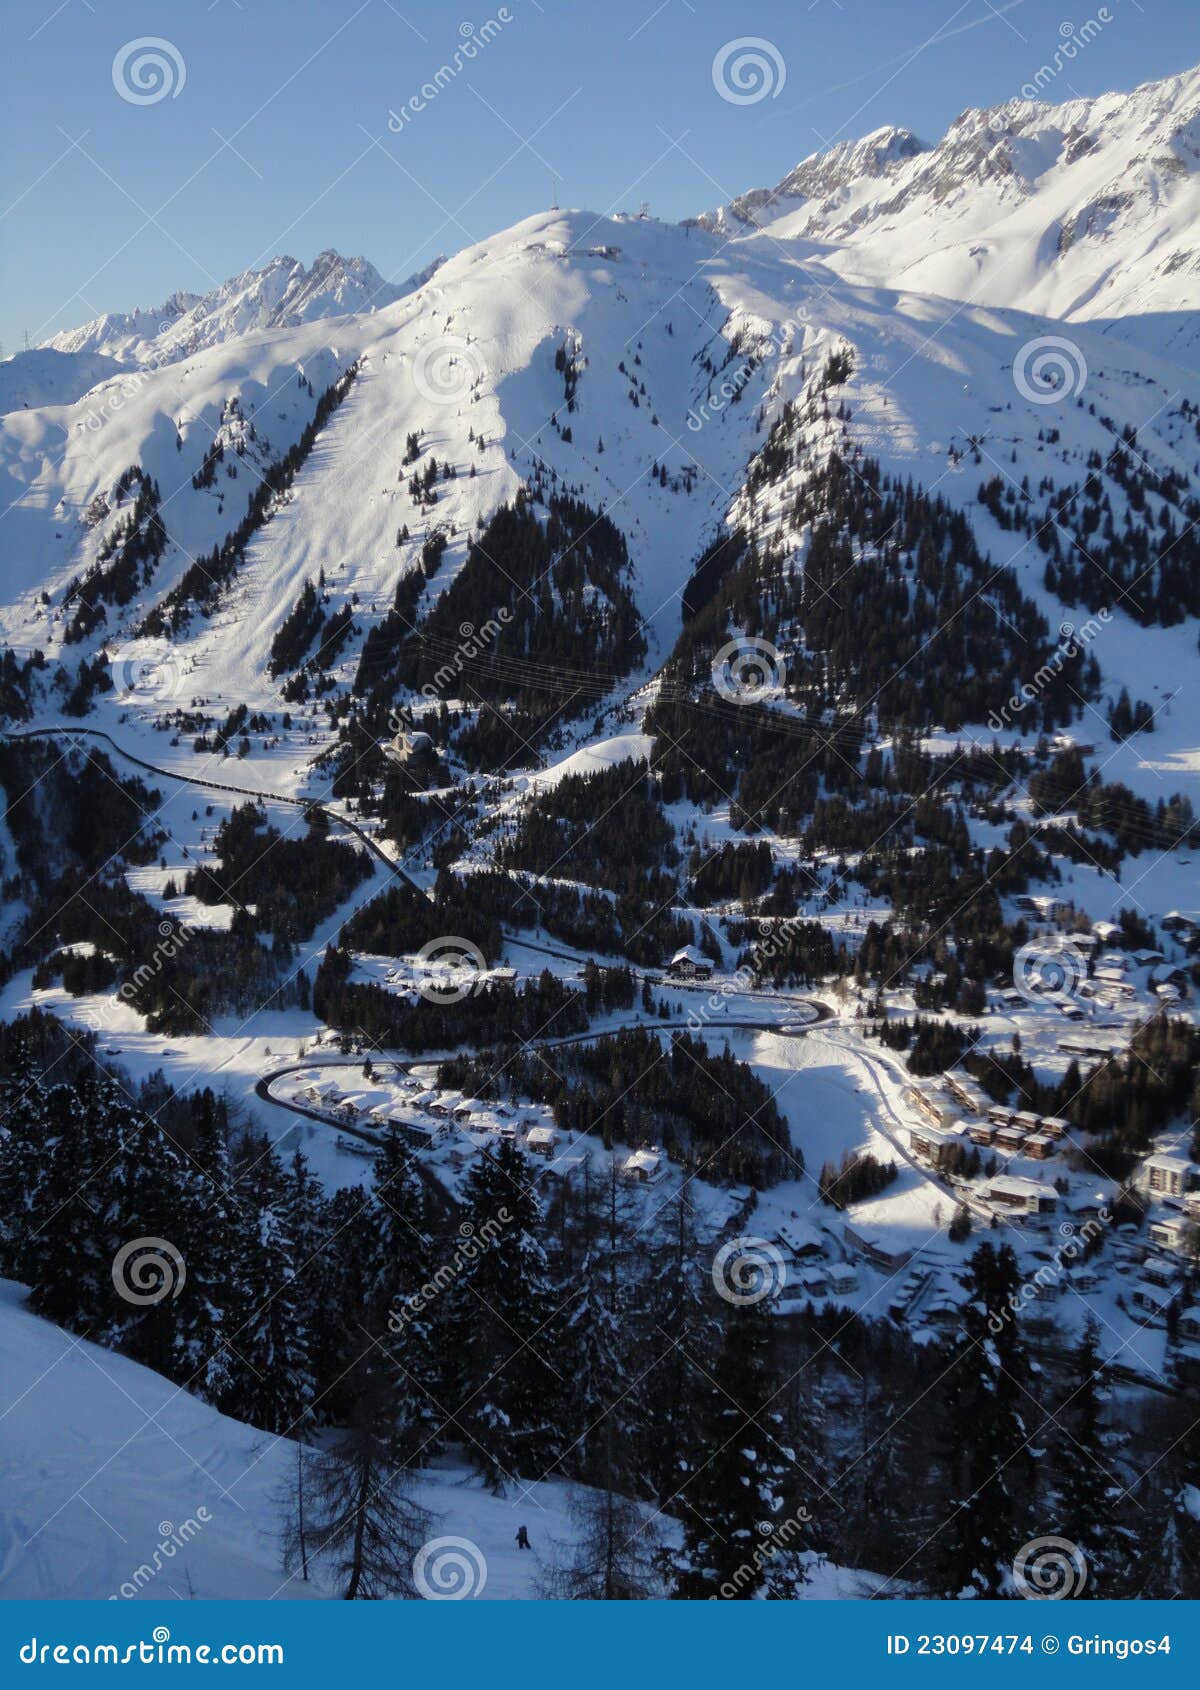 the mountain village of st-anton arlberg tyrol